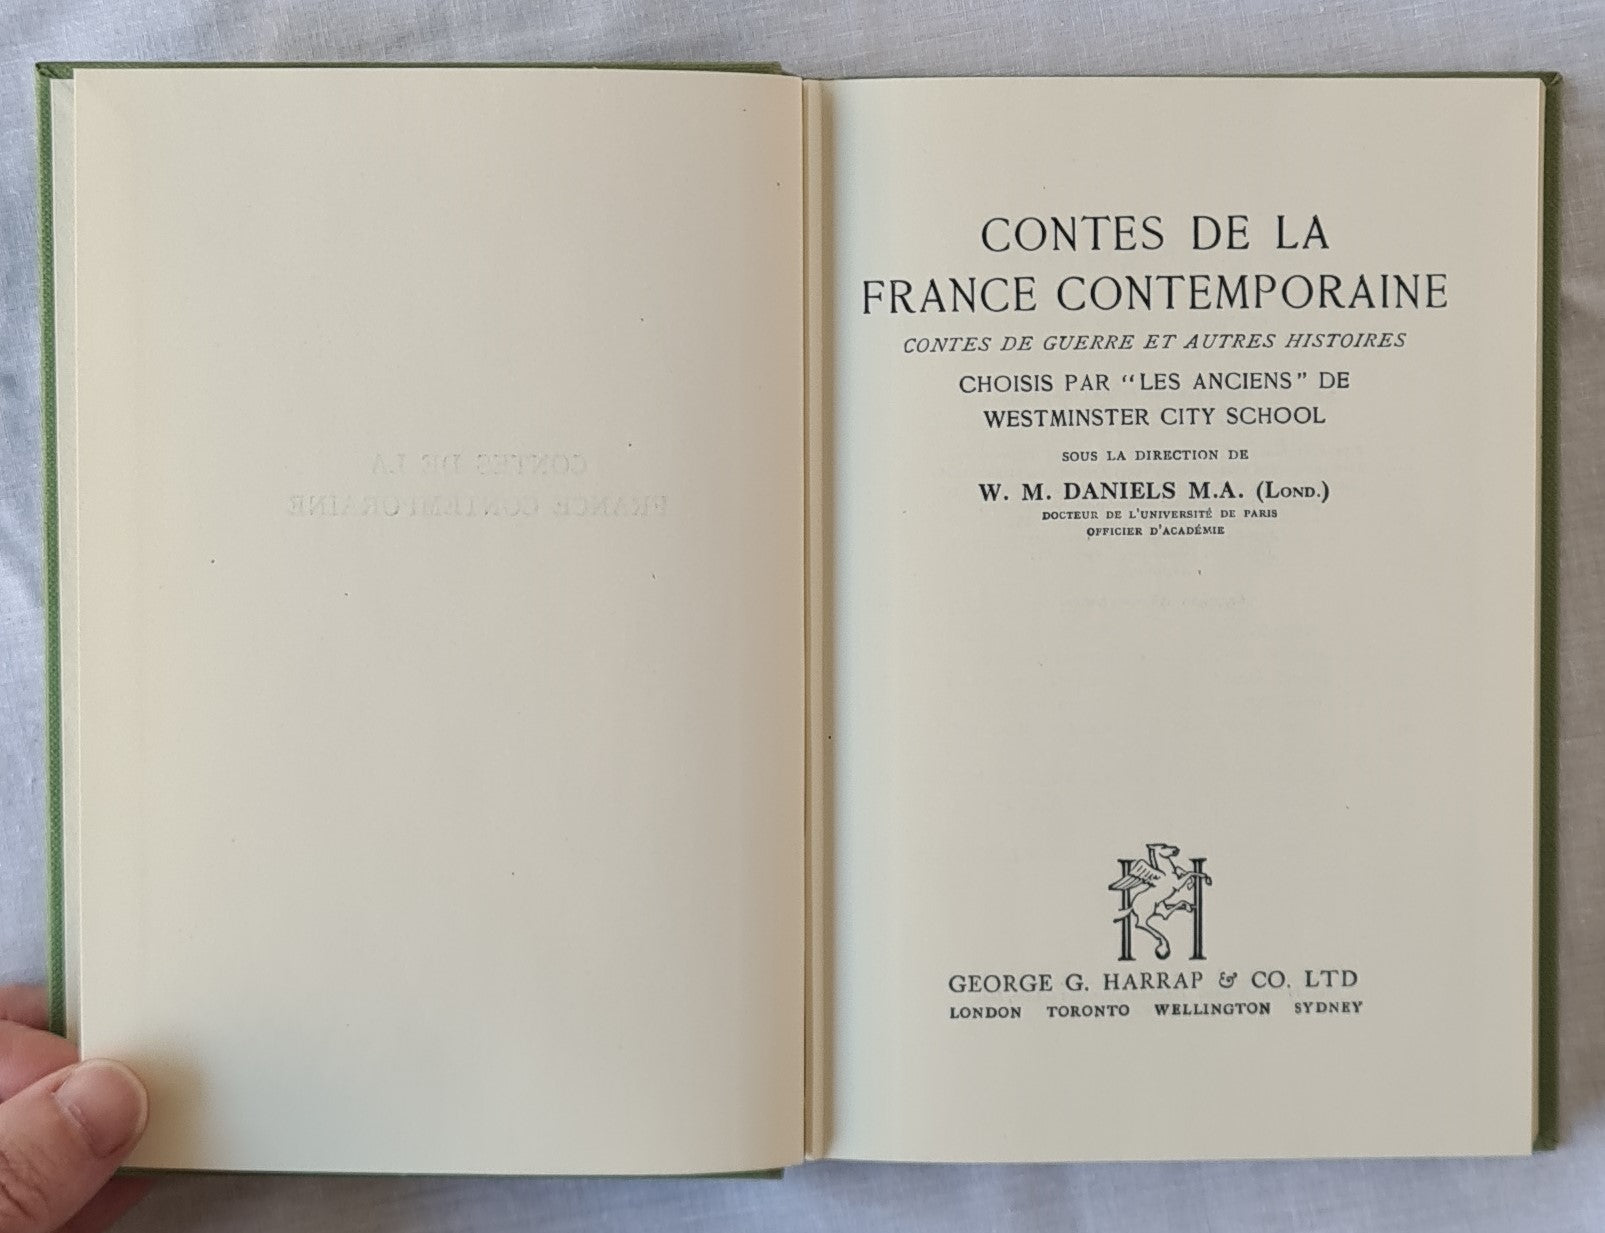 Contes De La France Contemporaine  Contes De Guerre Et Autres Histoires  Edited by W. M. Daniels